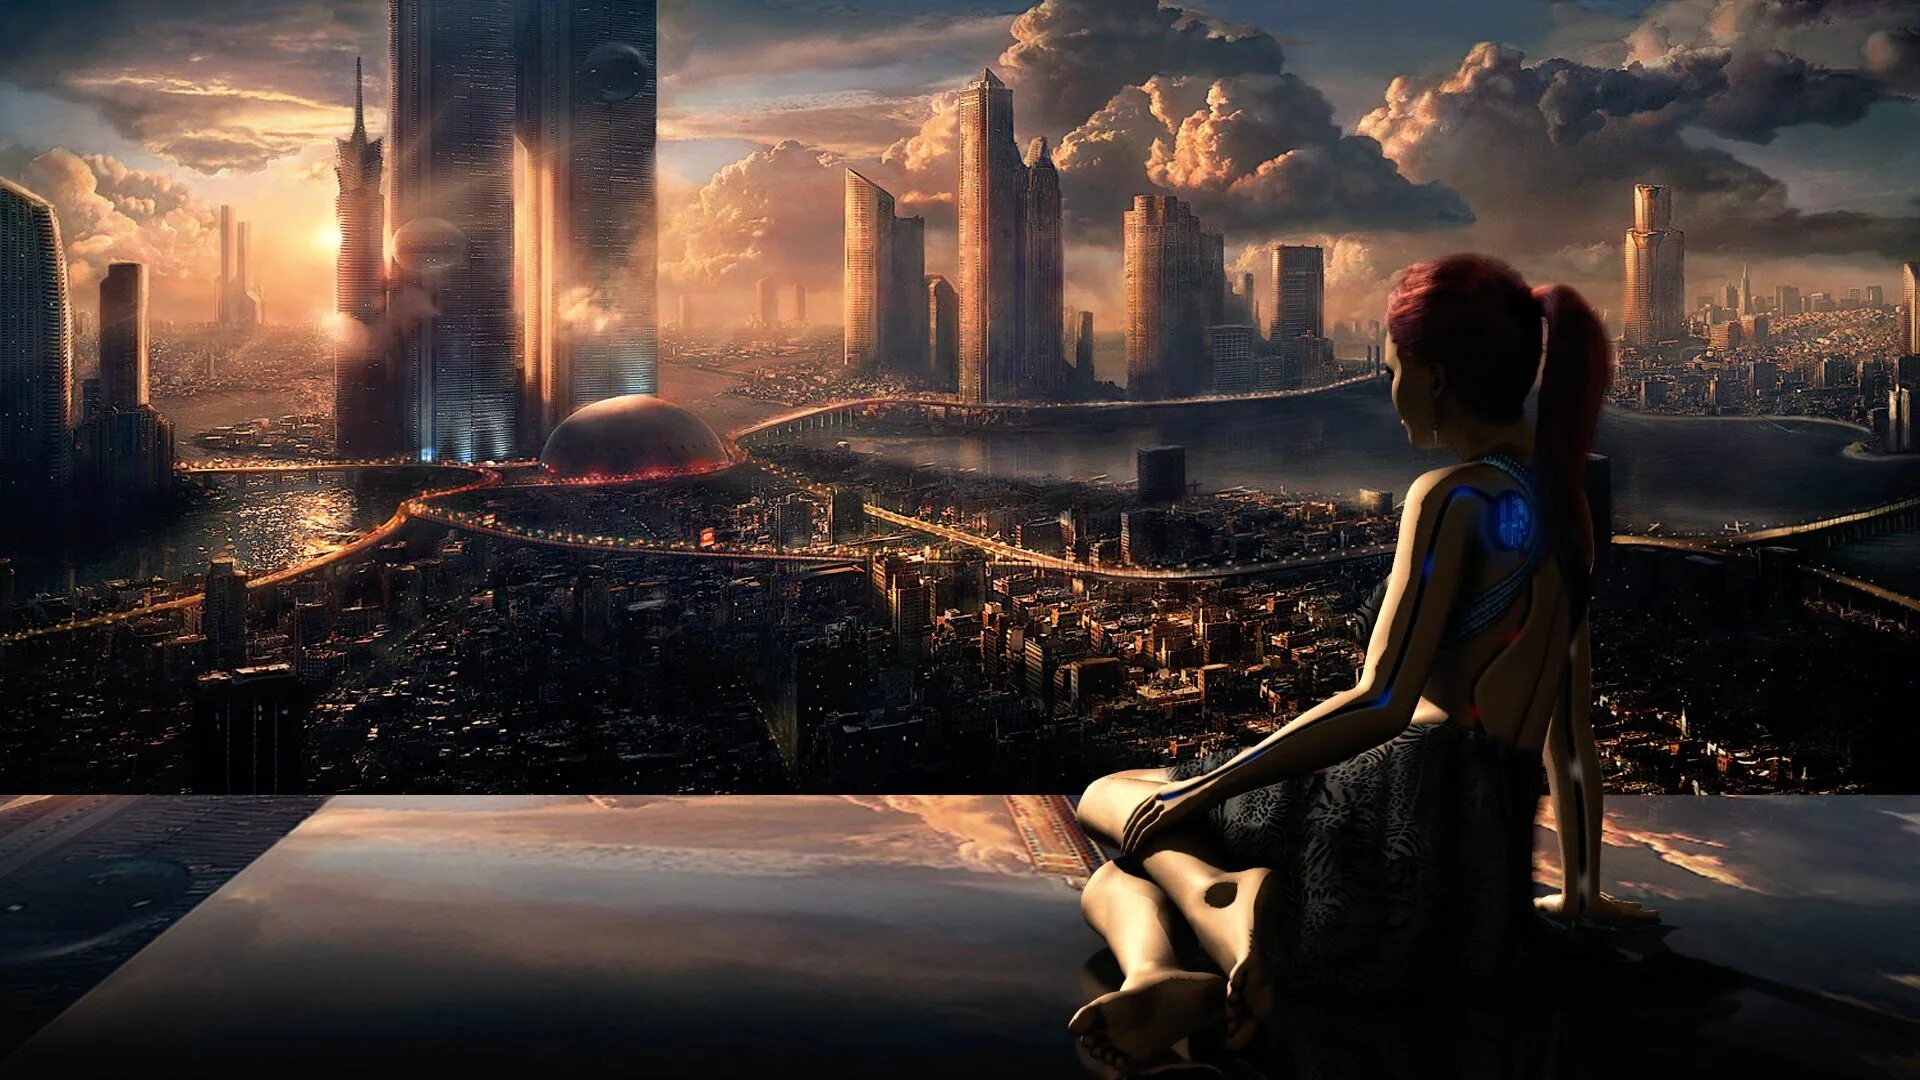 Стоящее будущее. Фантастический город. Пейзаж будущего. Девушка в городе будущего. Фантастические пейзажи будущего.